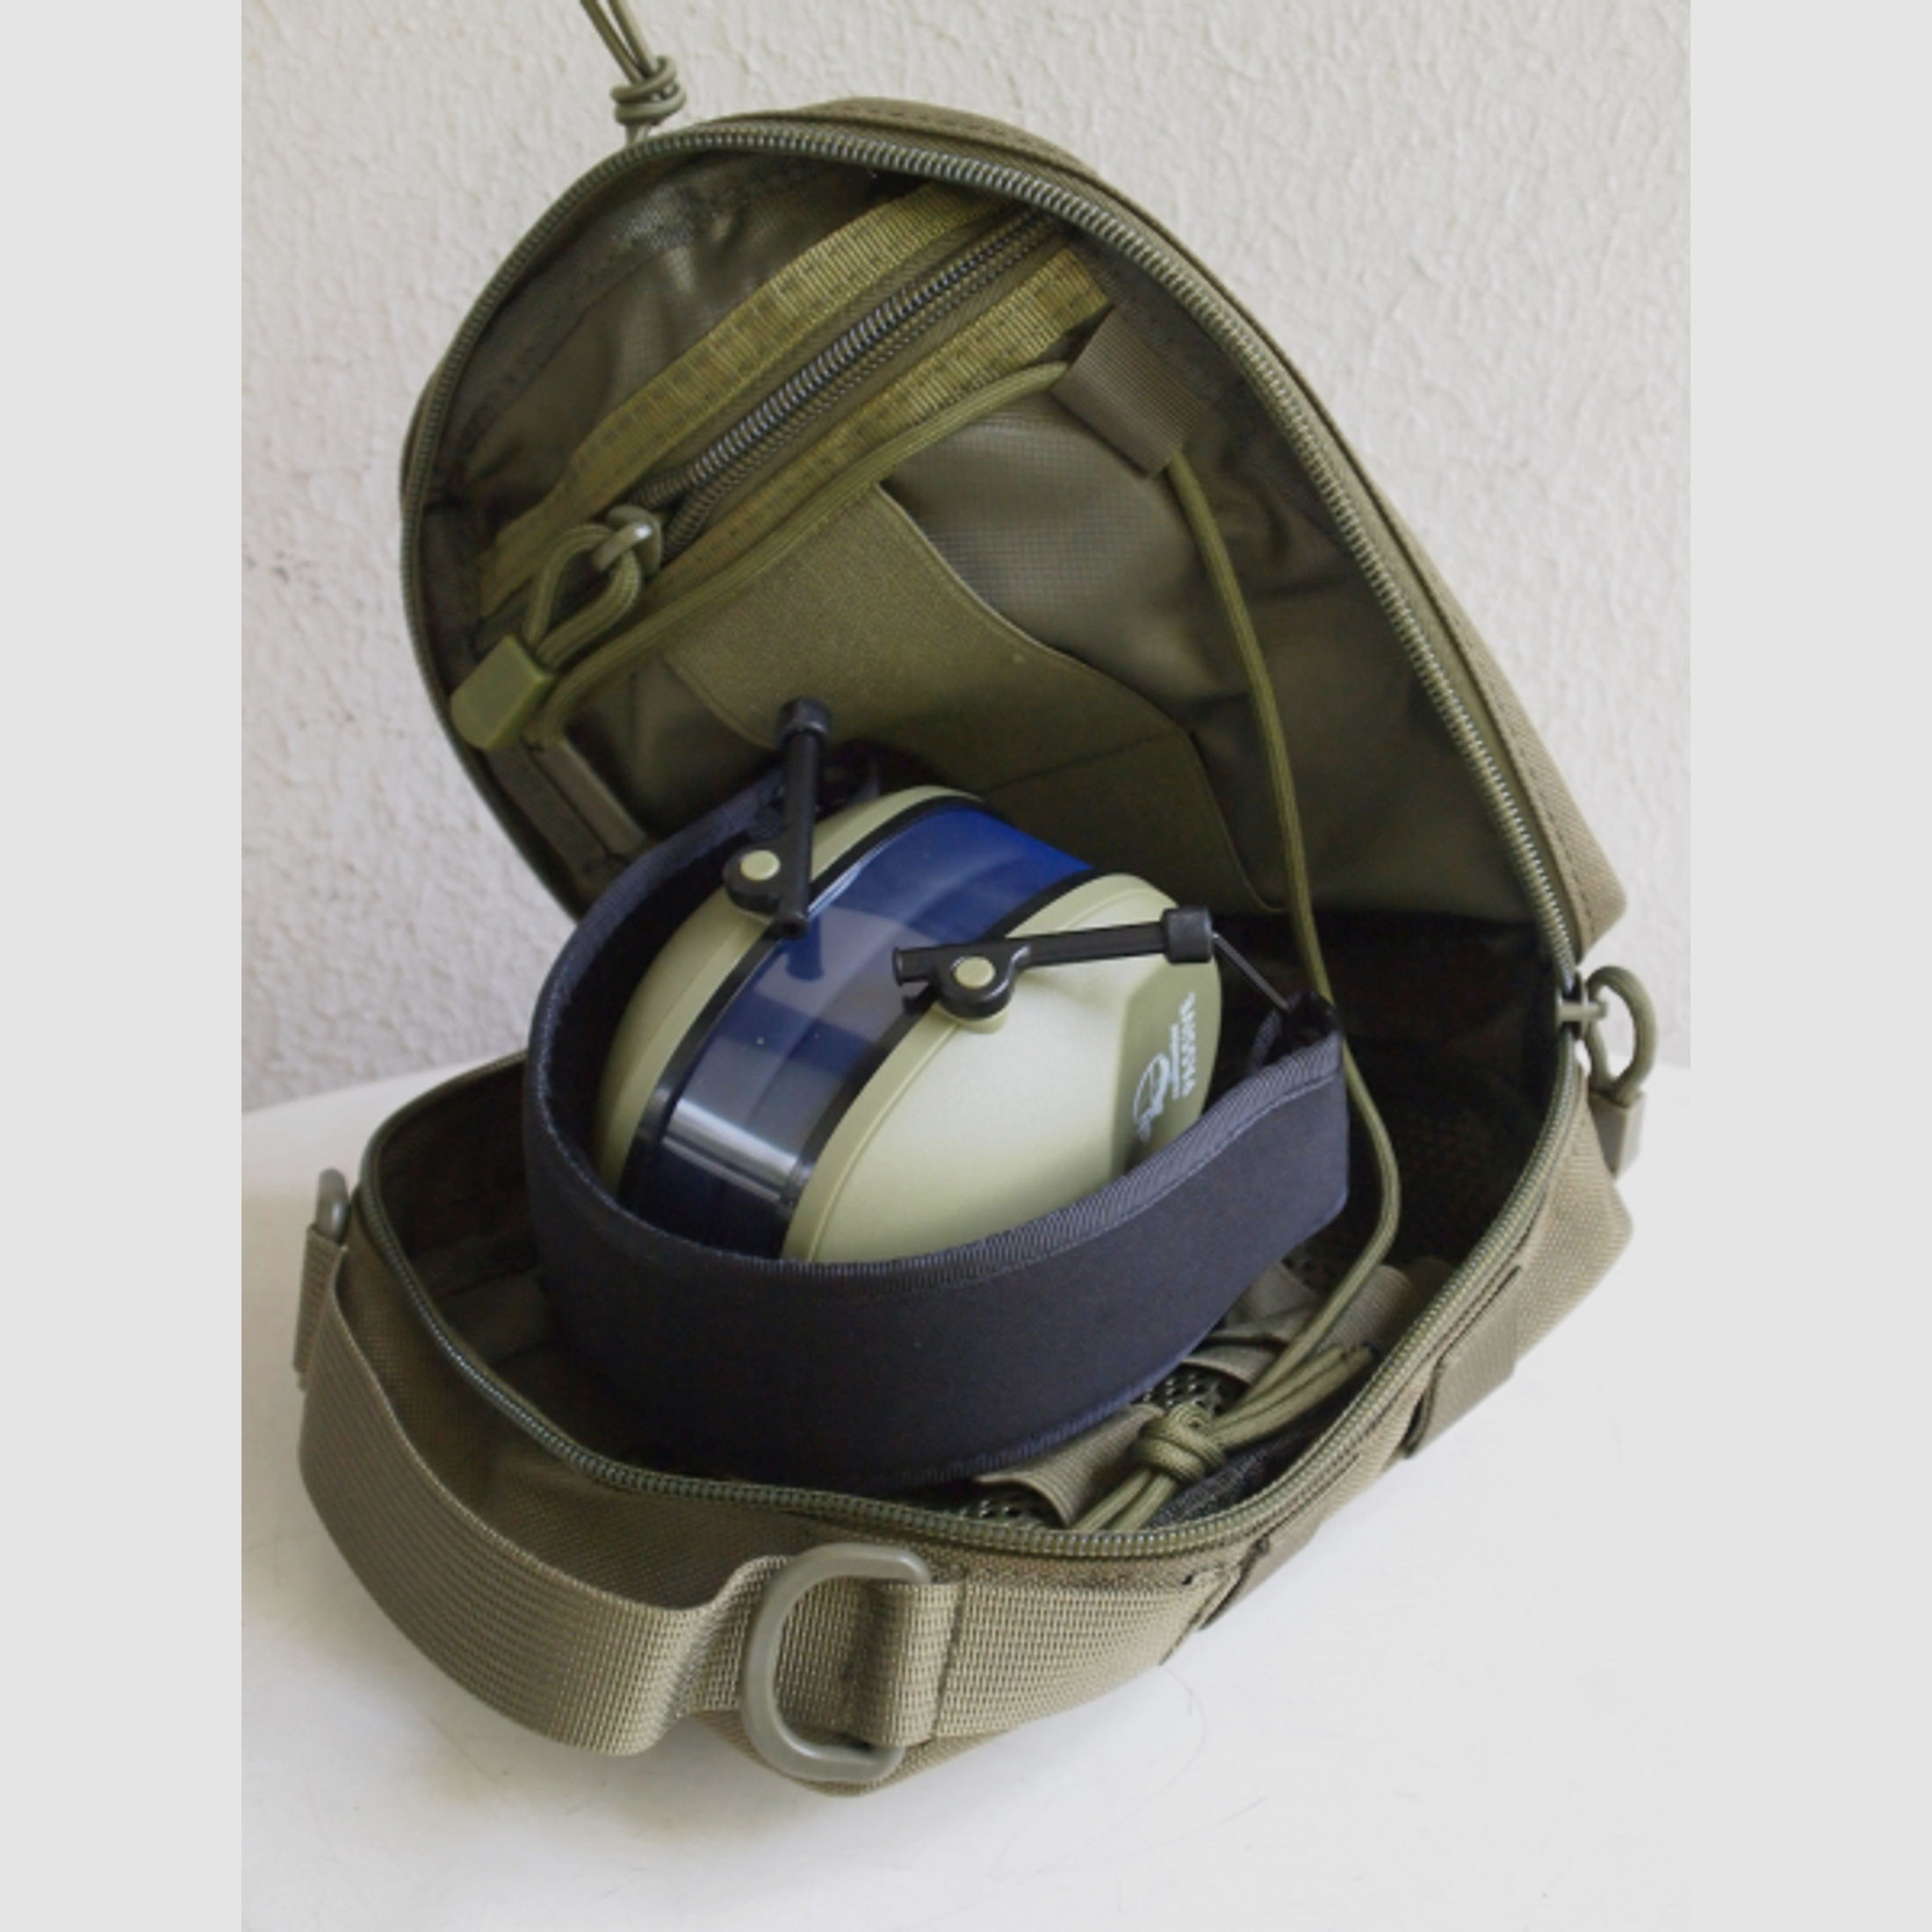 Militär Fernglas Tasche für 8x30 Ferngläser, Fernglas oder Gehörschutz, oliv, tactical bag